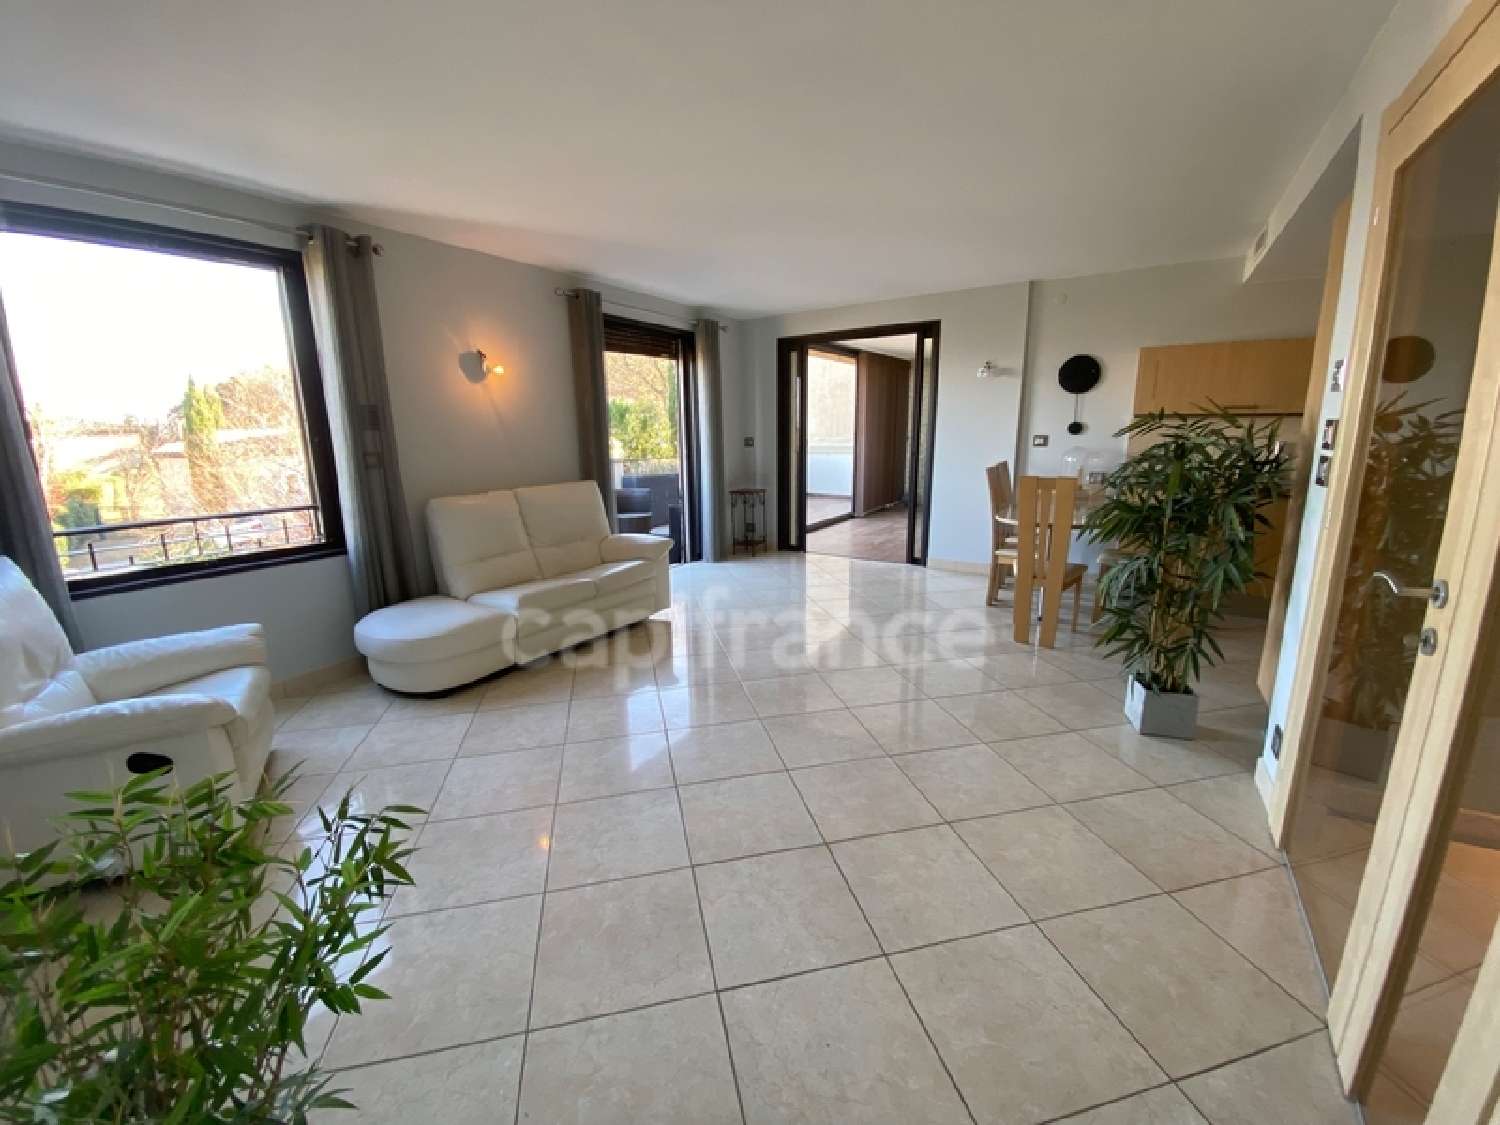  for sale apartment Rochefort-du-Gard Gard 1